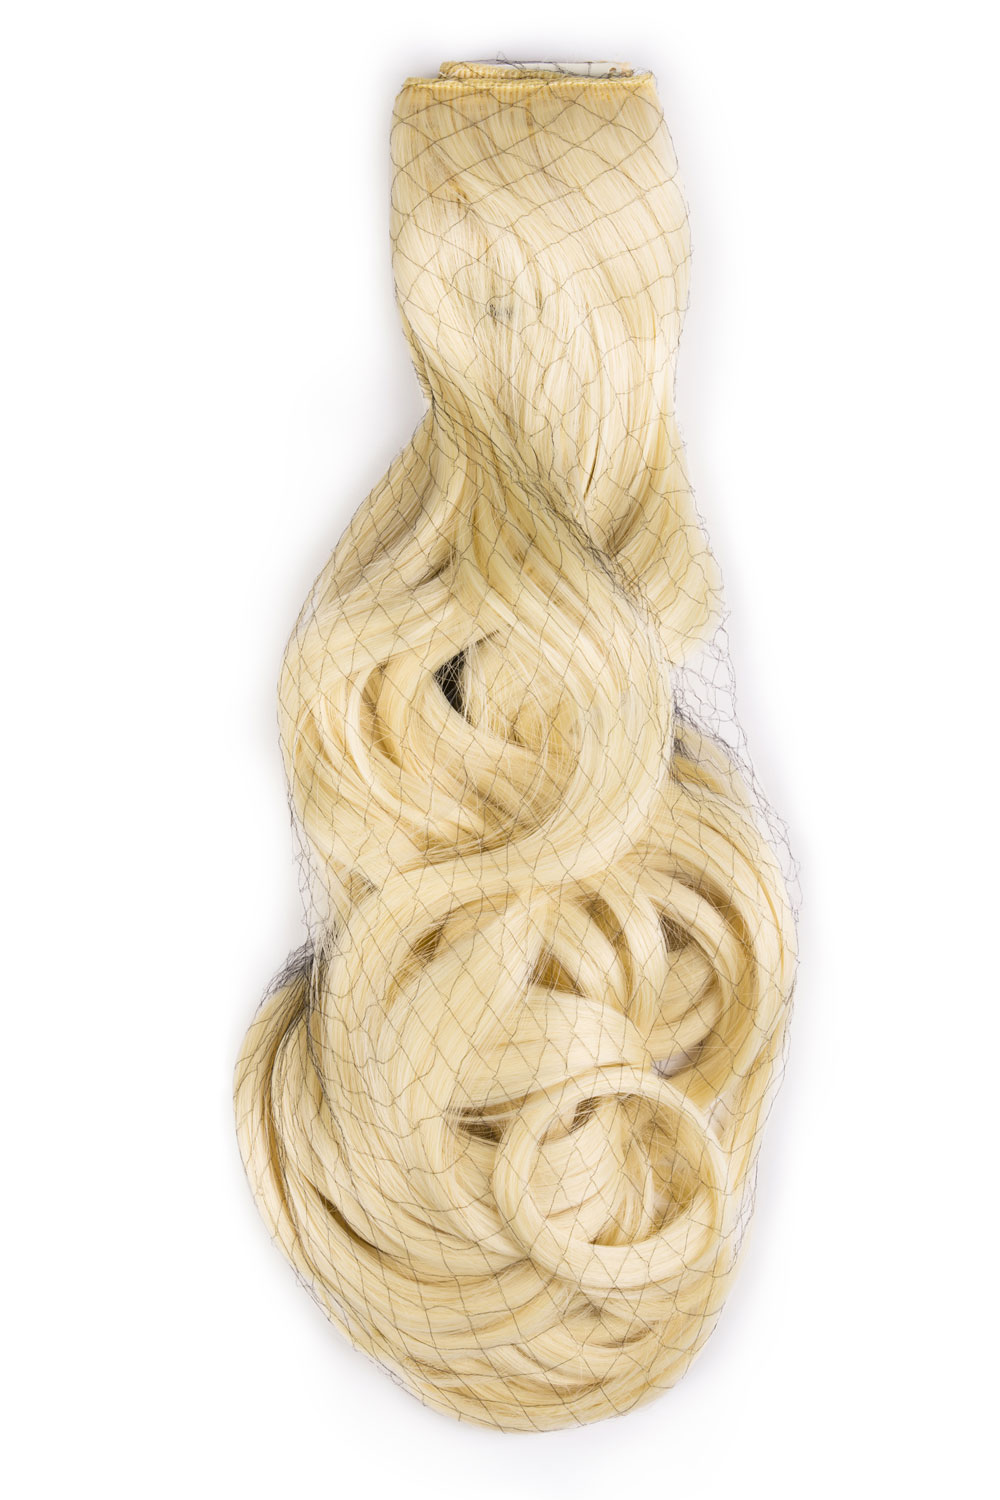 Najsvetlejšie blond jednopásové vlasy, vlnité, 60cm, 115g, farba 613